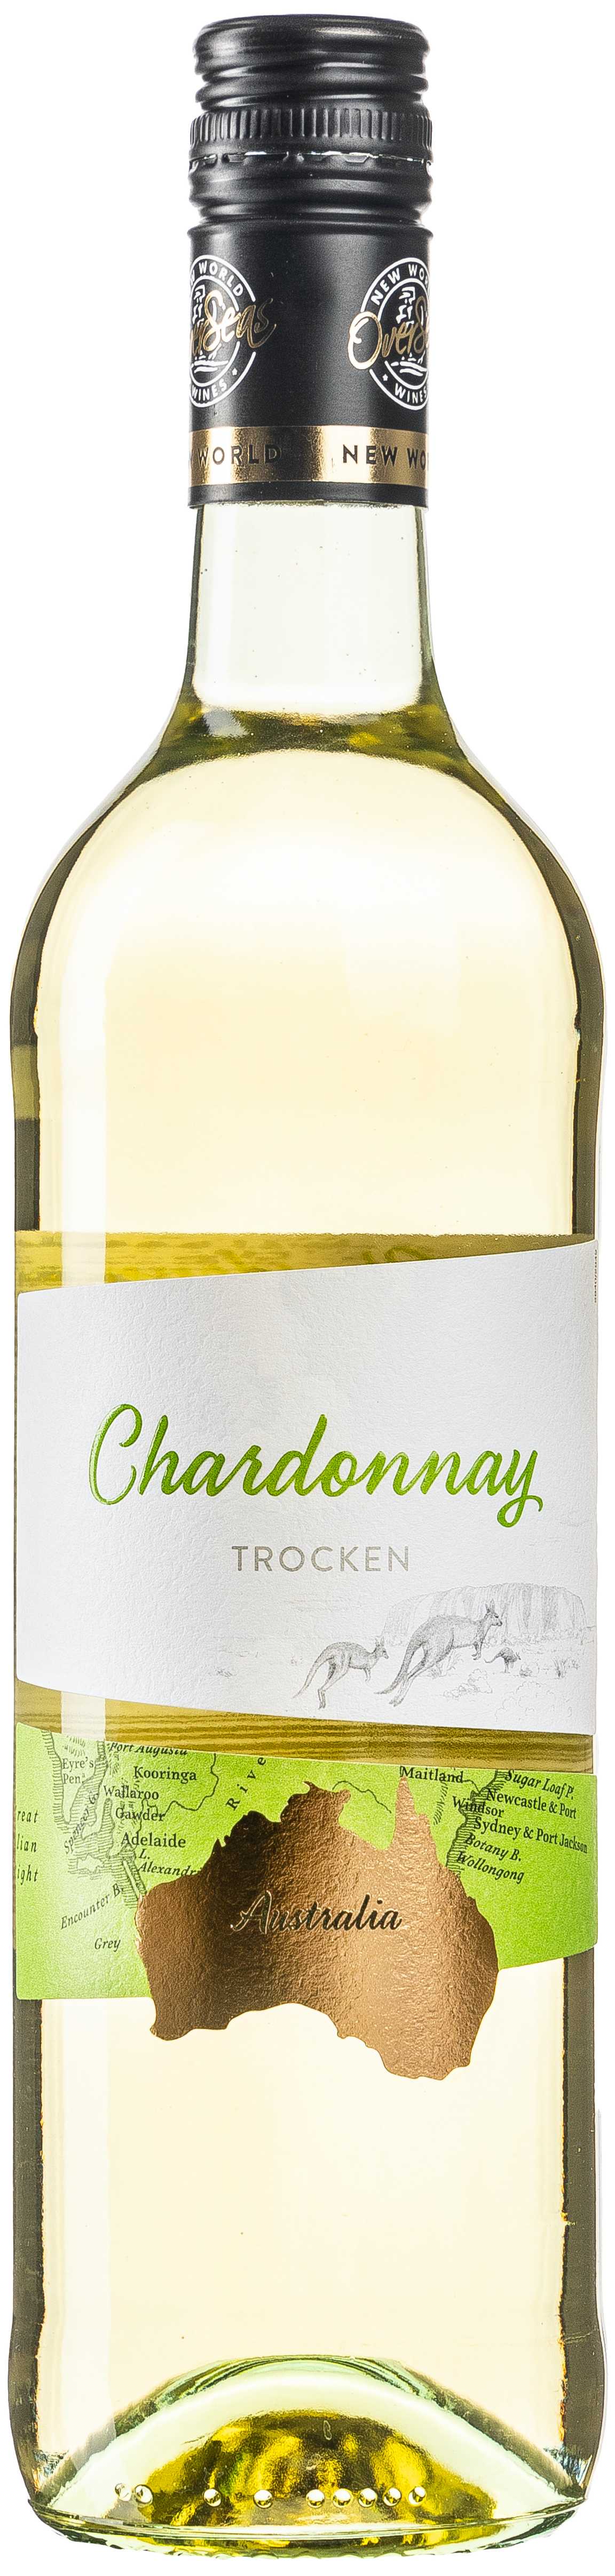 OverSeas Australien Chardonnay Trocken 12,5% vol. 0,75L